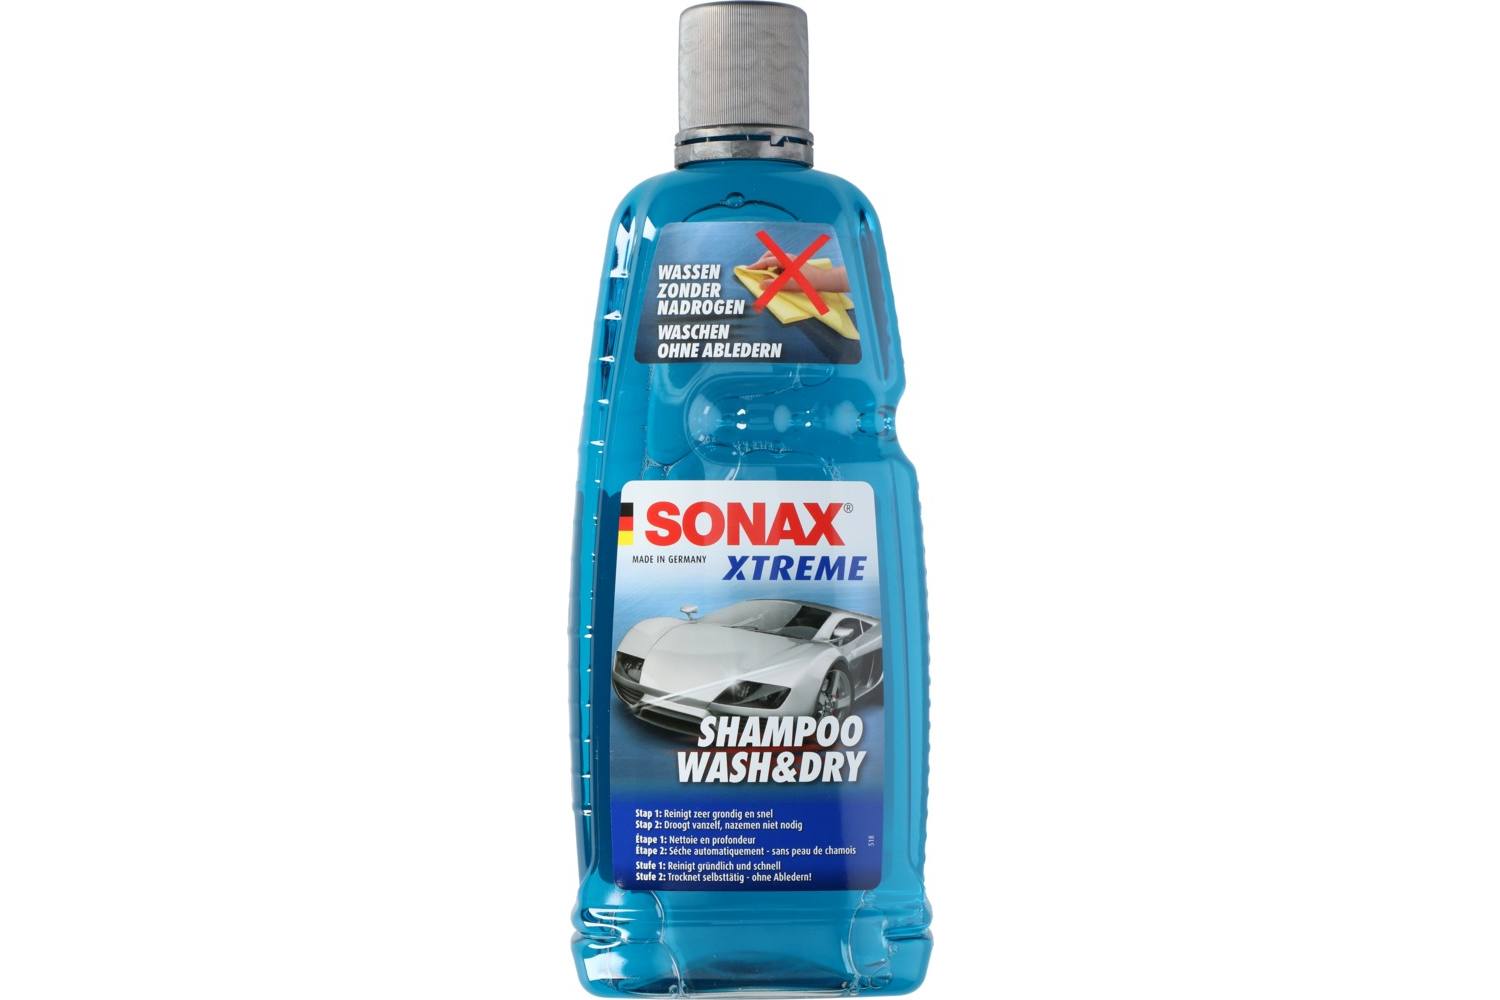 Shampooing pour voiture, Sonax Xtreme, 1000ml, 2-en-1 2